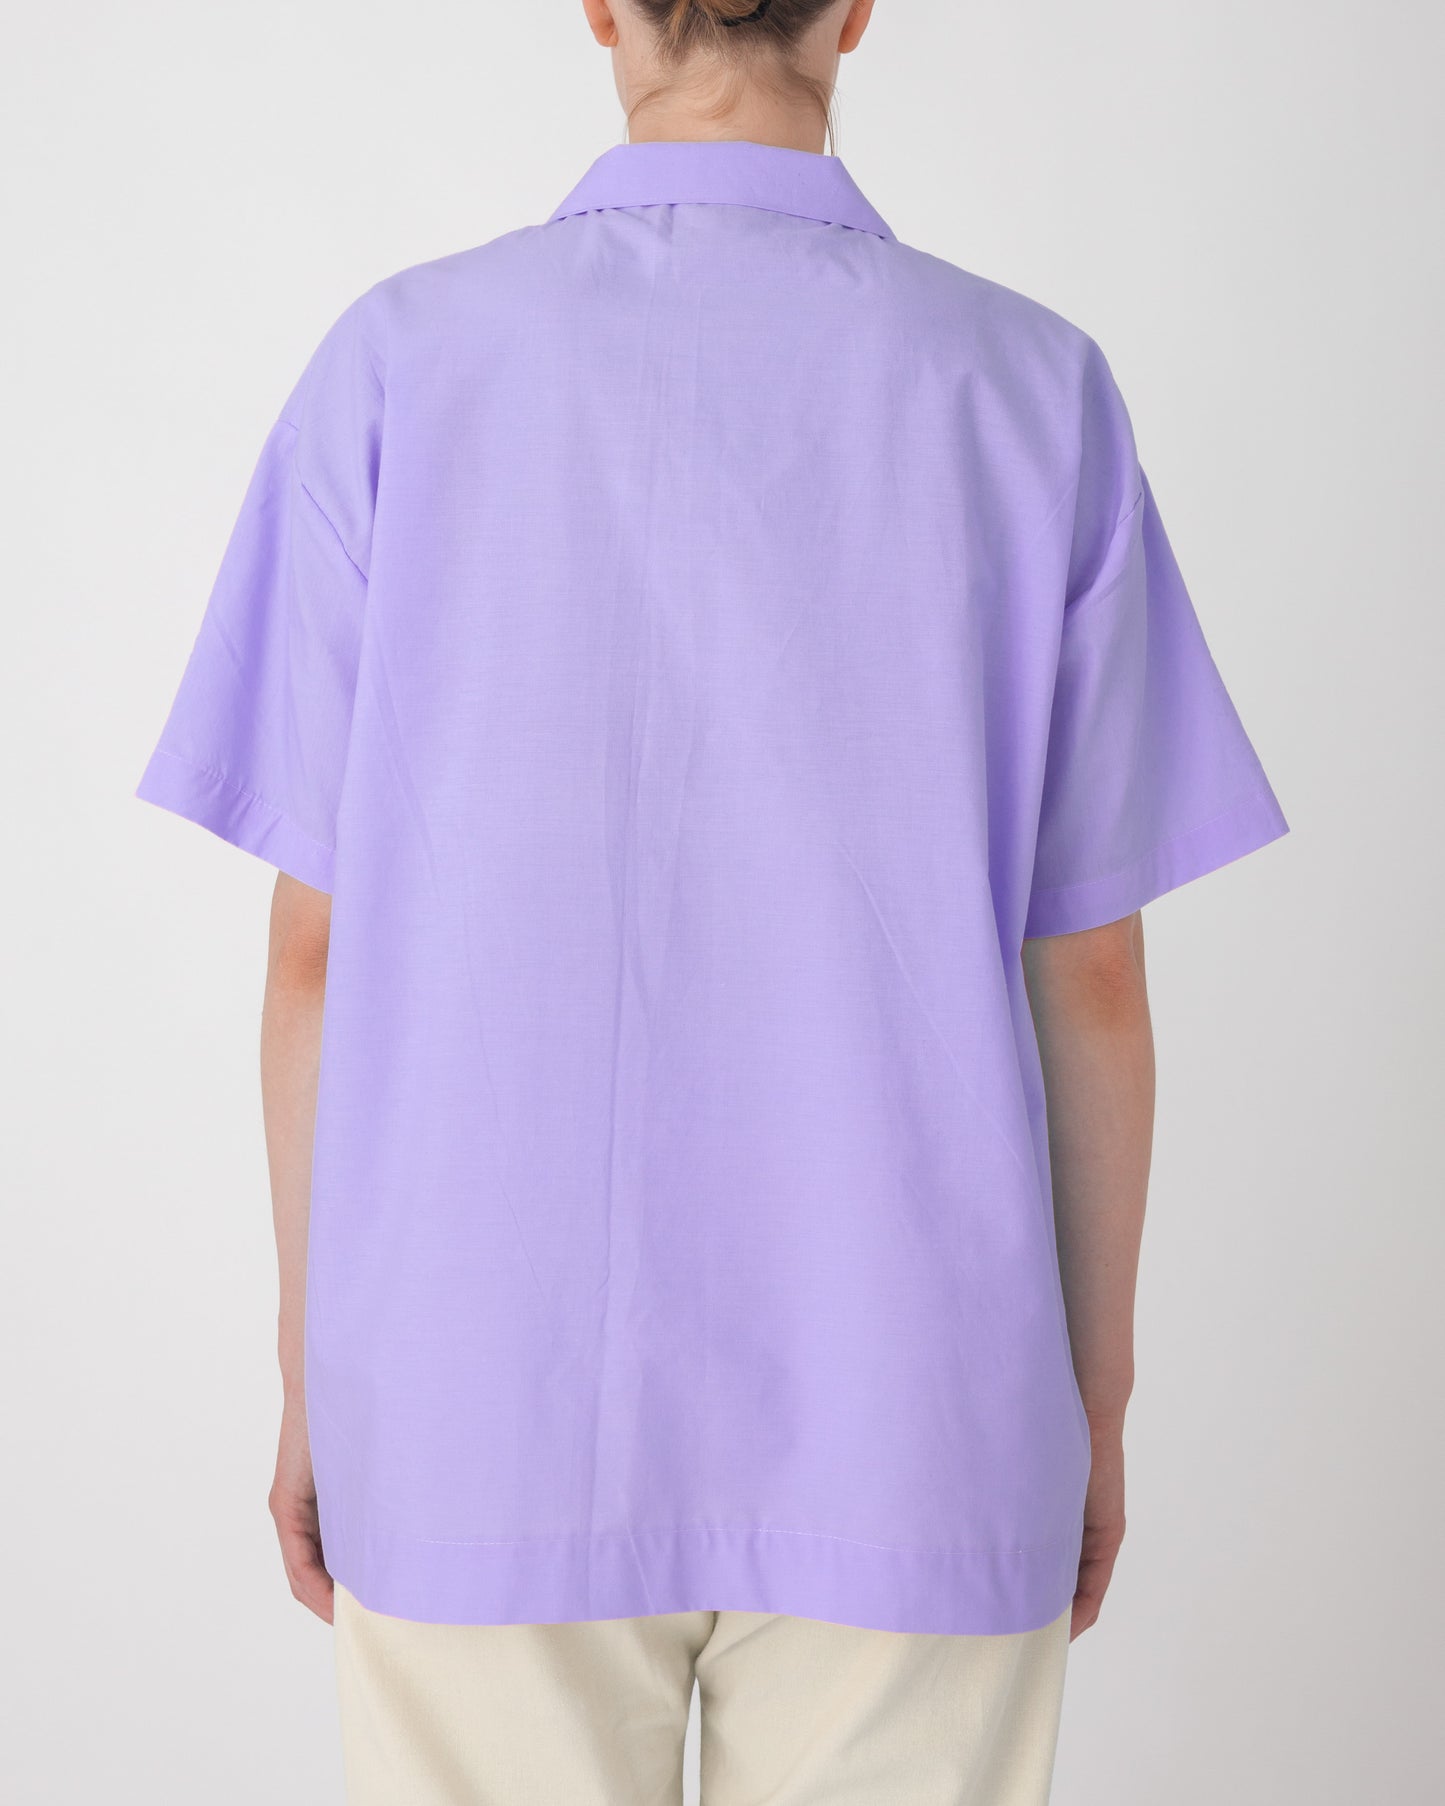 Unisex Bed Linen Shirt